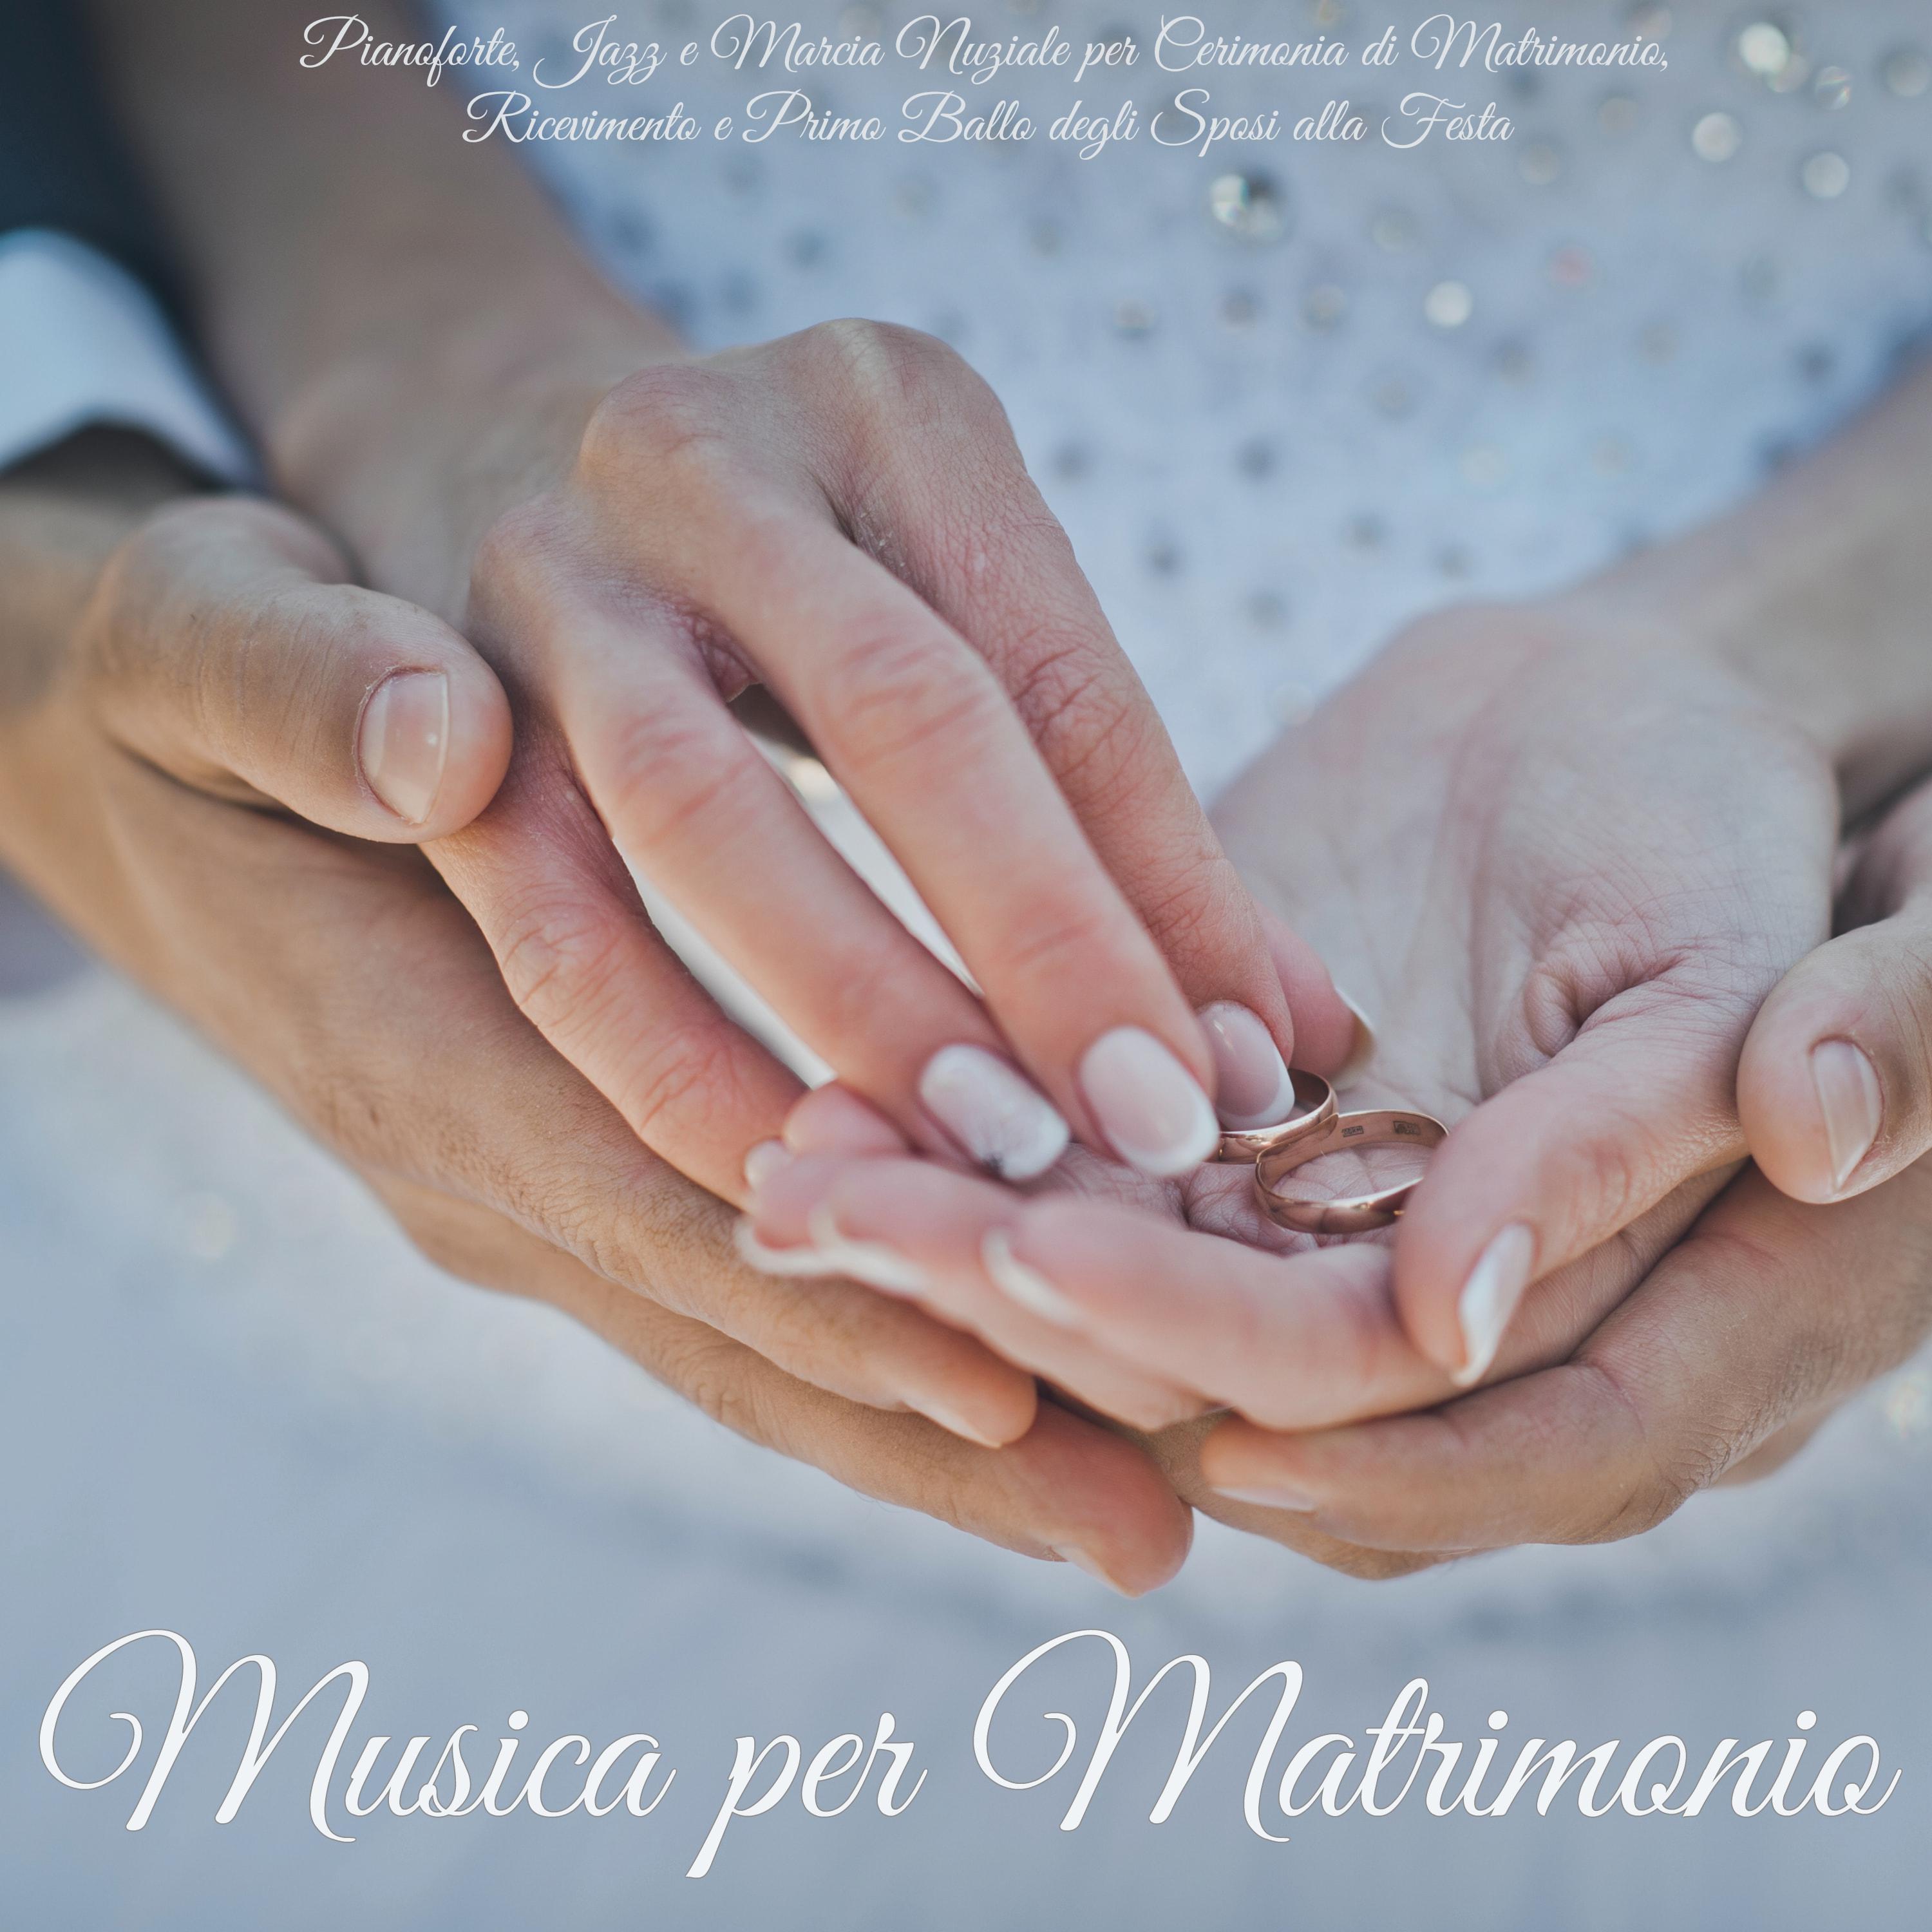 Musica per Matrimonio  Pianoforte, Jazz e Marcia Nuziale per Cerimonia di Matrimonio, Ricevimento e Primo Ballo degli Sposi alla Festa